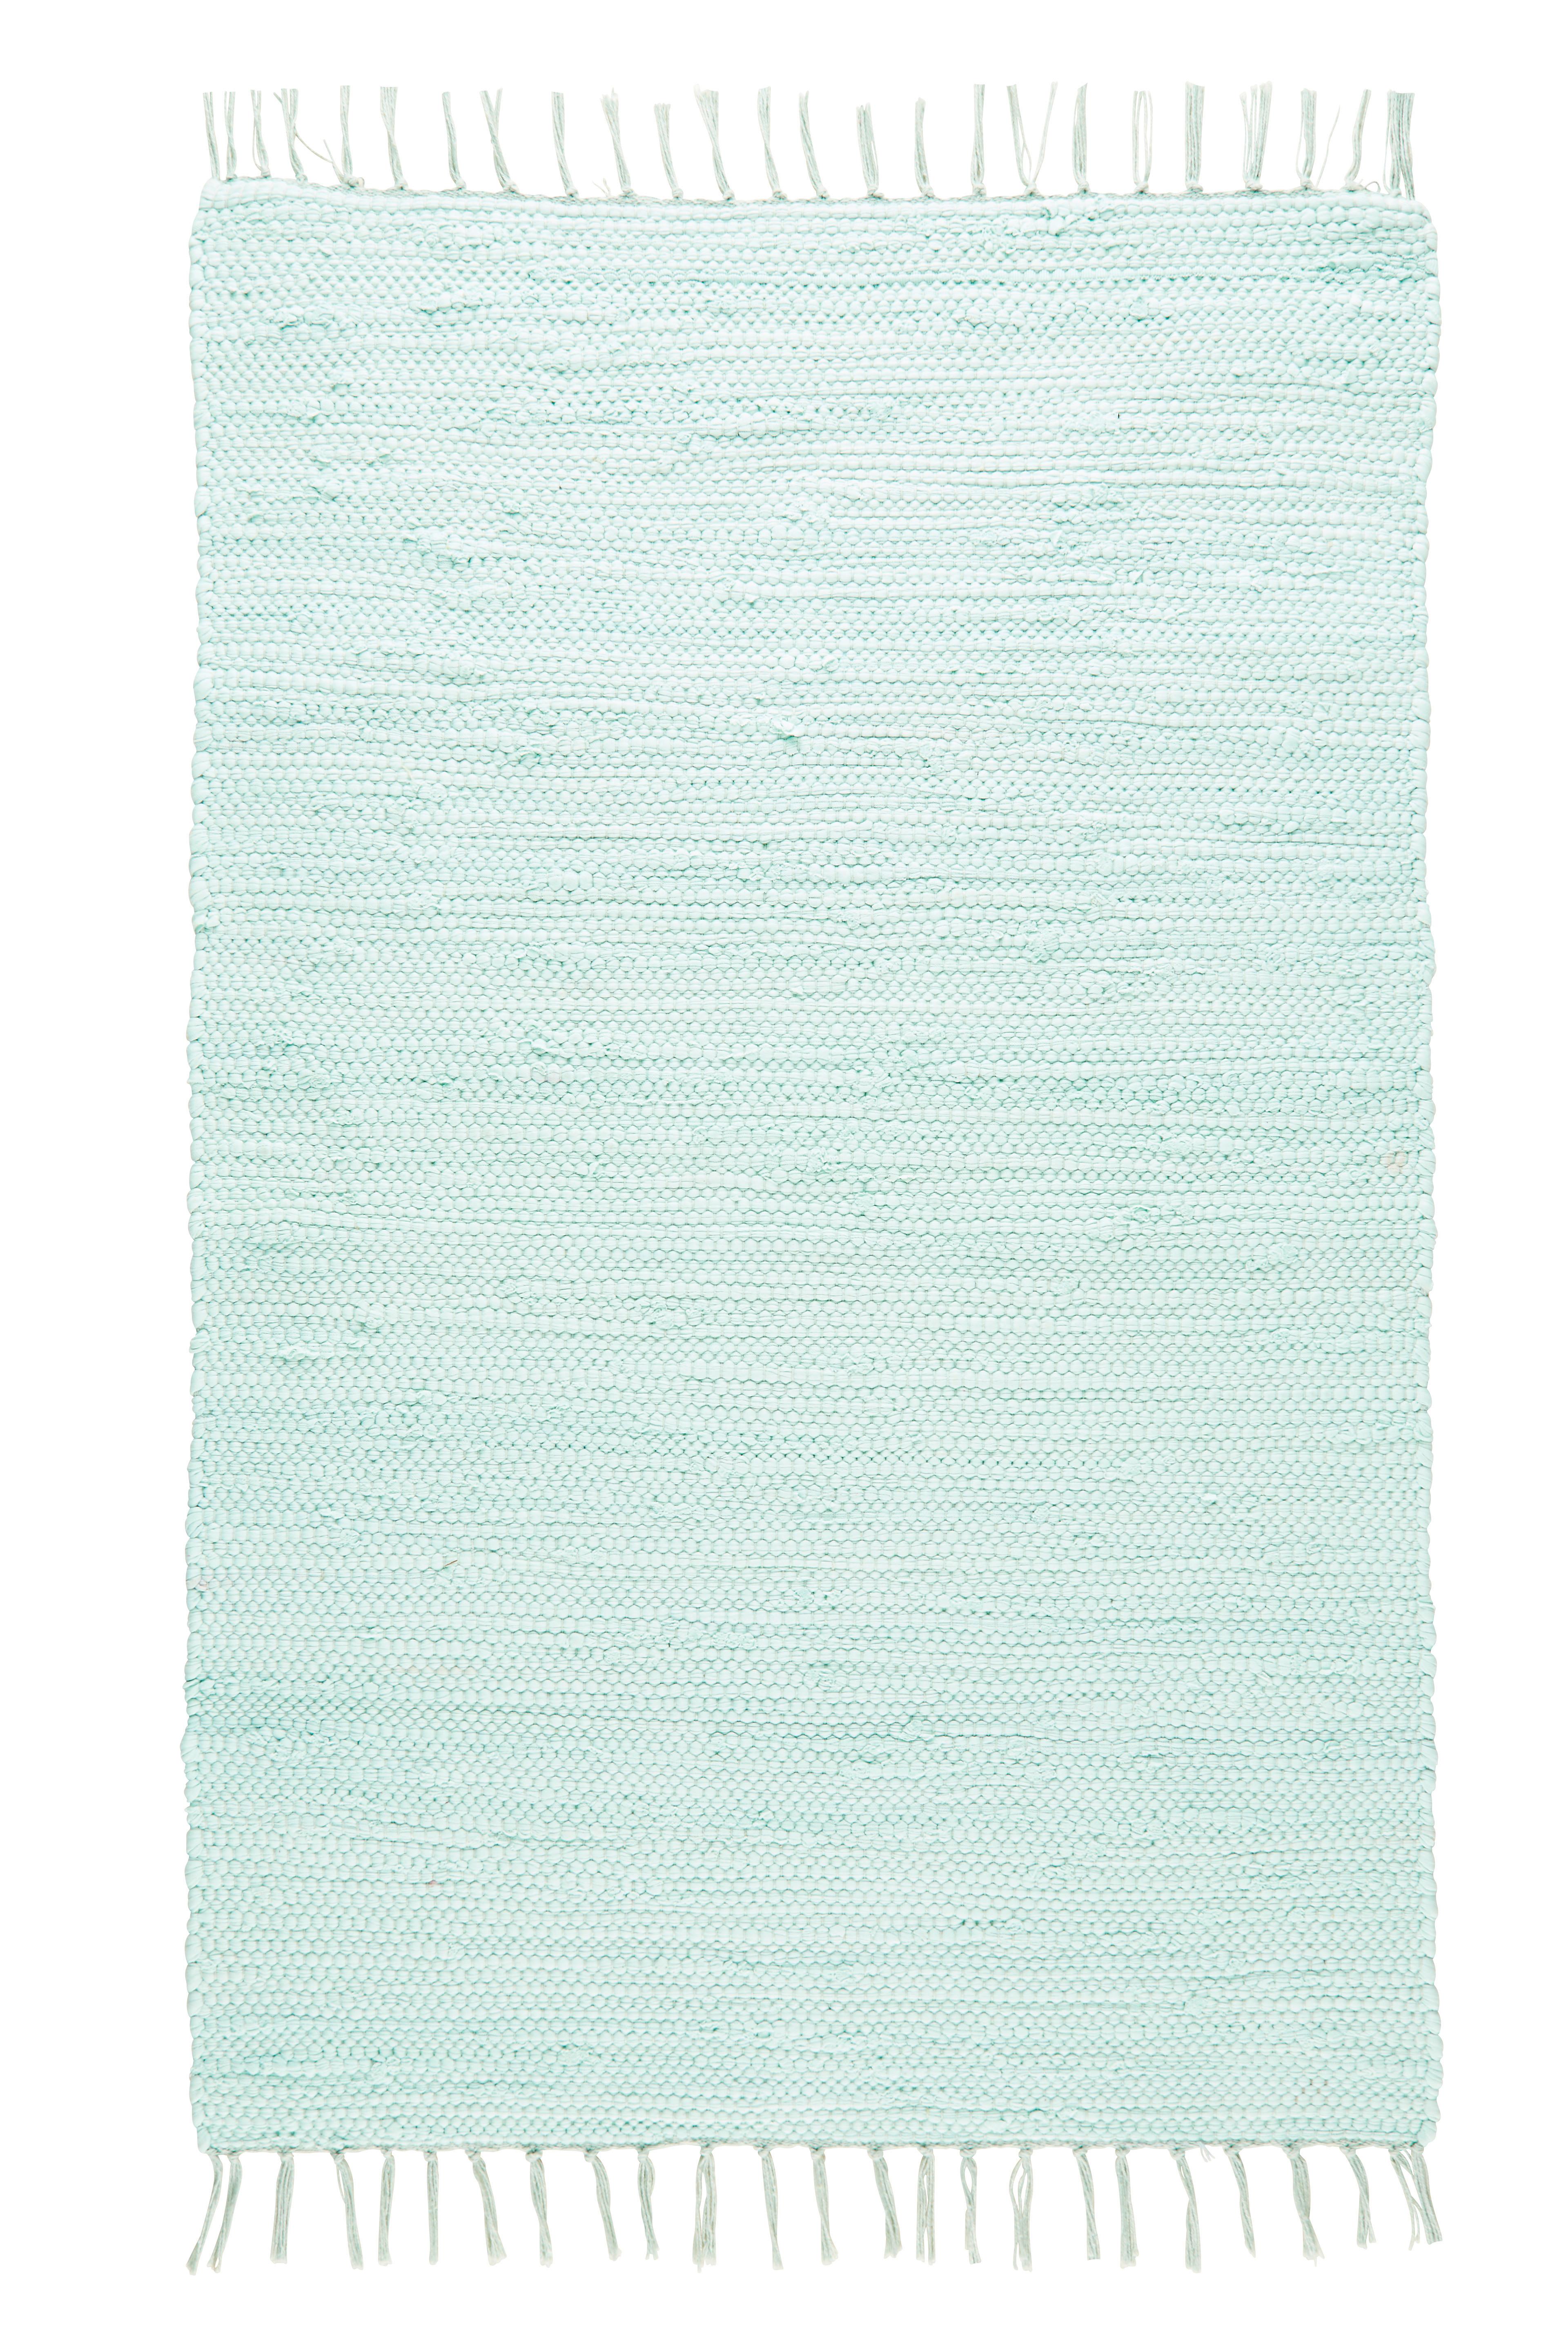 Tkaný Handričkový Koberec Julia 1, 60/90cm, Sv.zelená - svetlozelená, Romantický / Vidiecky, textil (60/90cm) - Modern Living